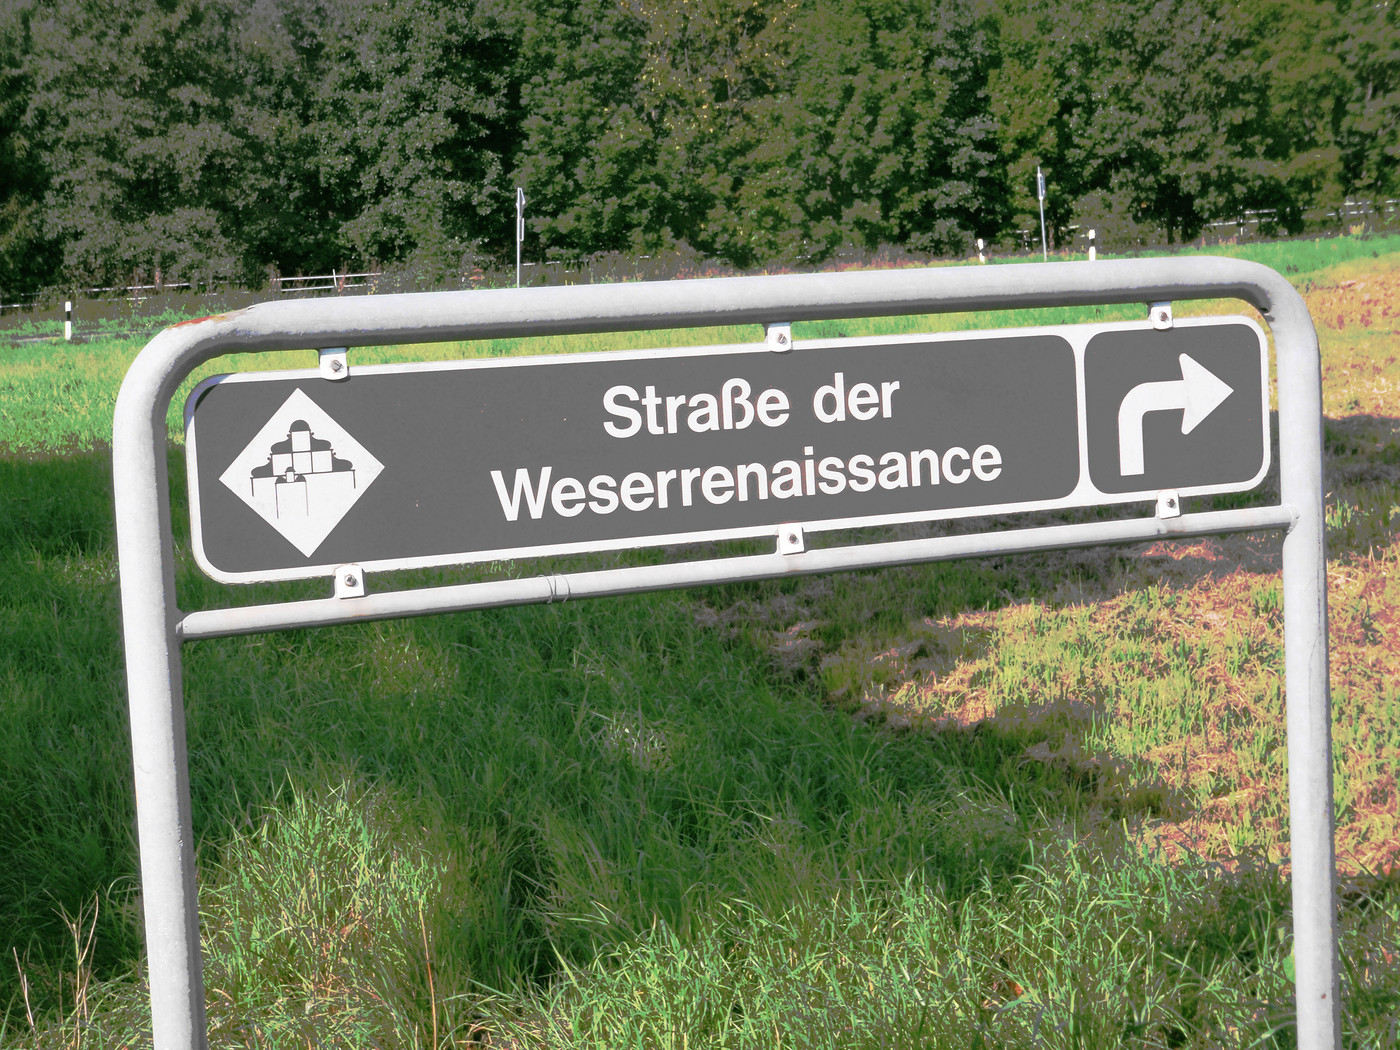 Straße der Weserrenaissance